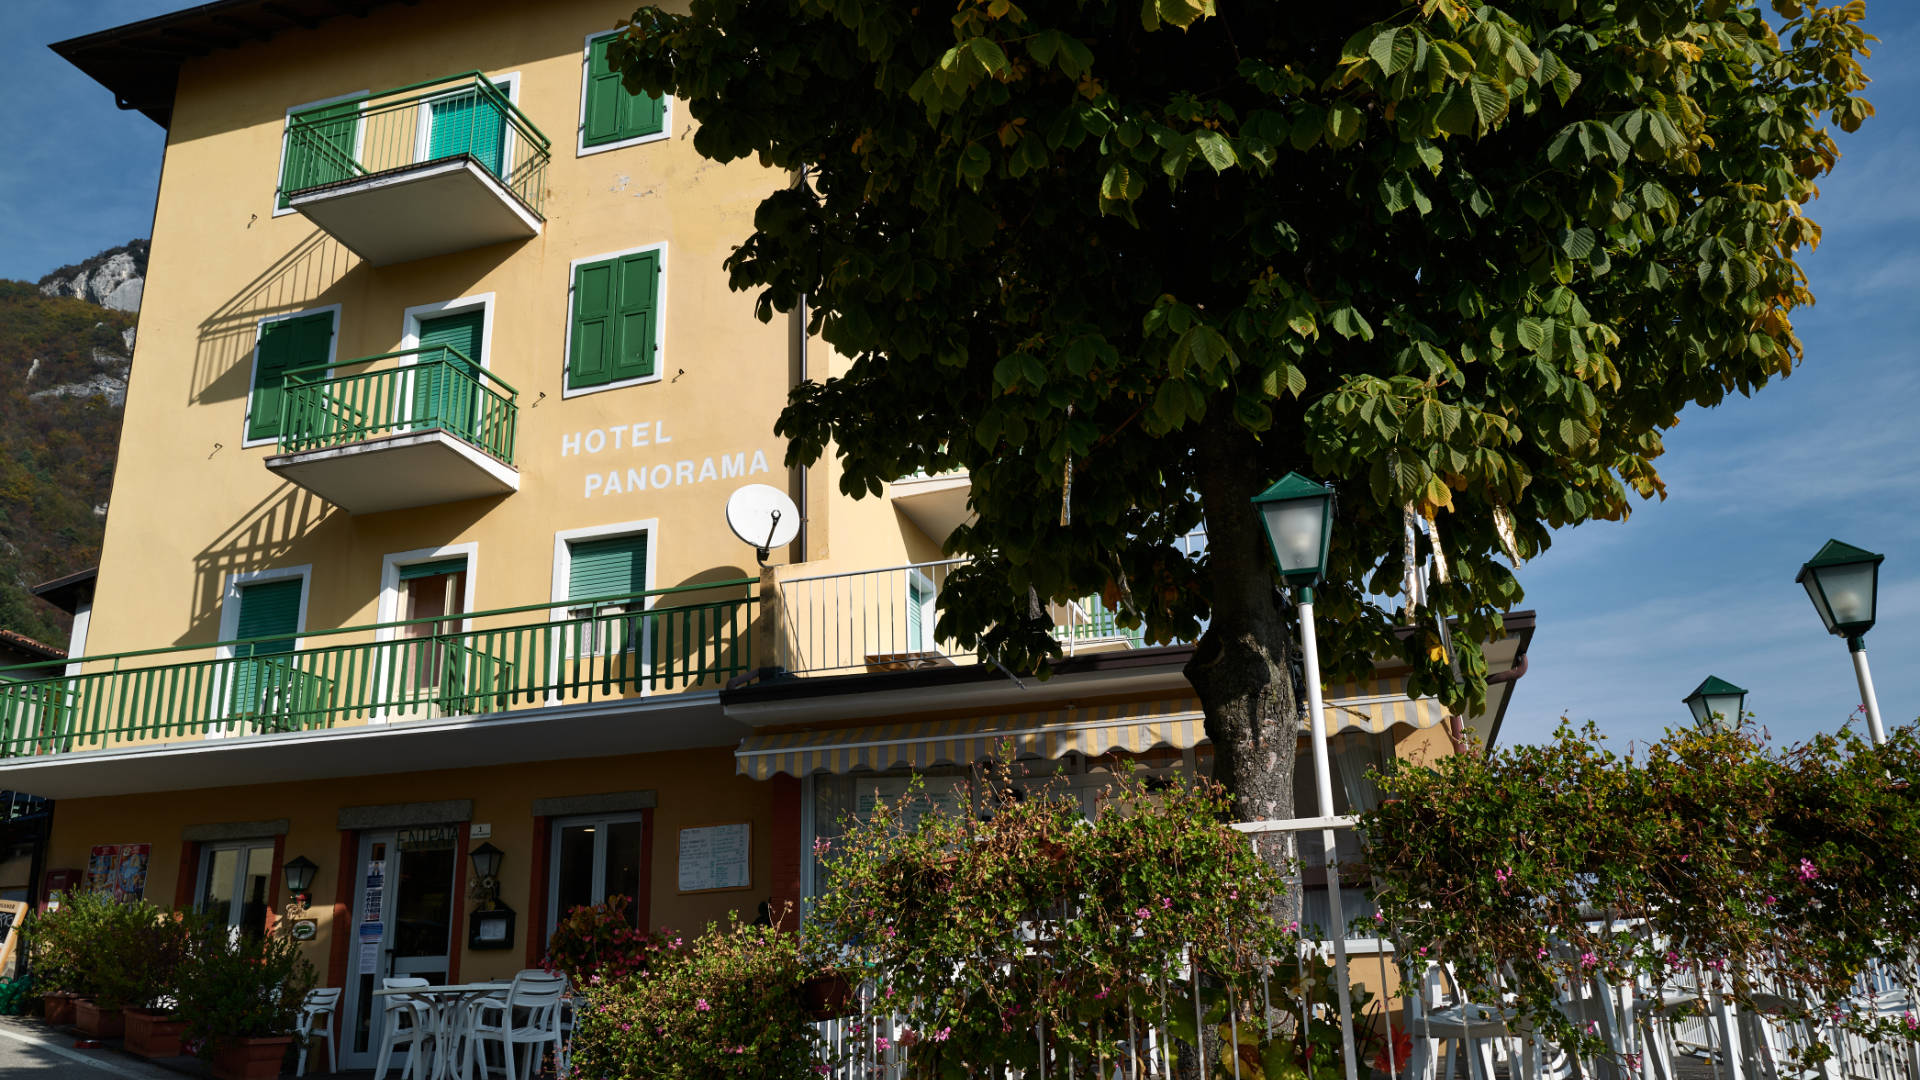 Das Hotel Ristorante Panorama in Pregasina, Lago di Garda.